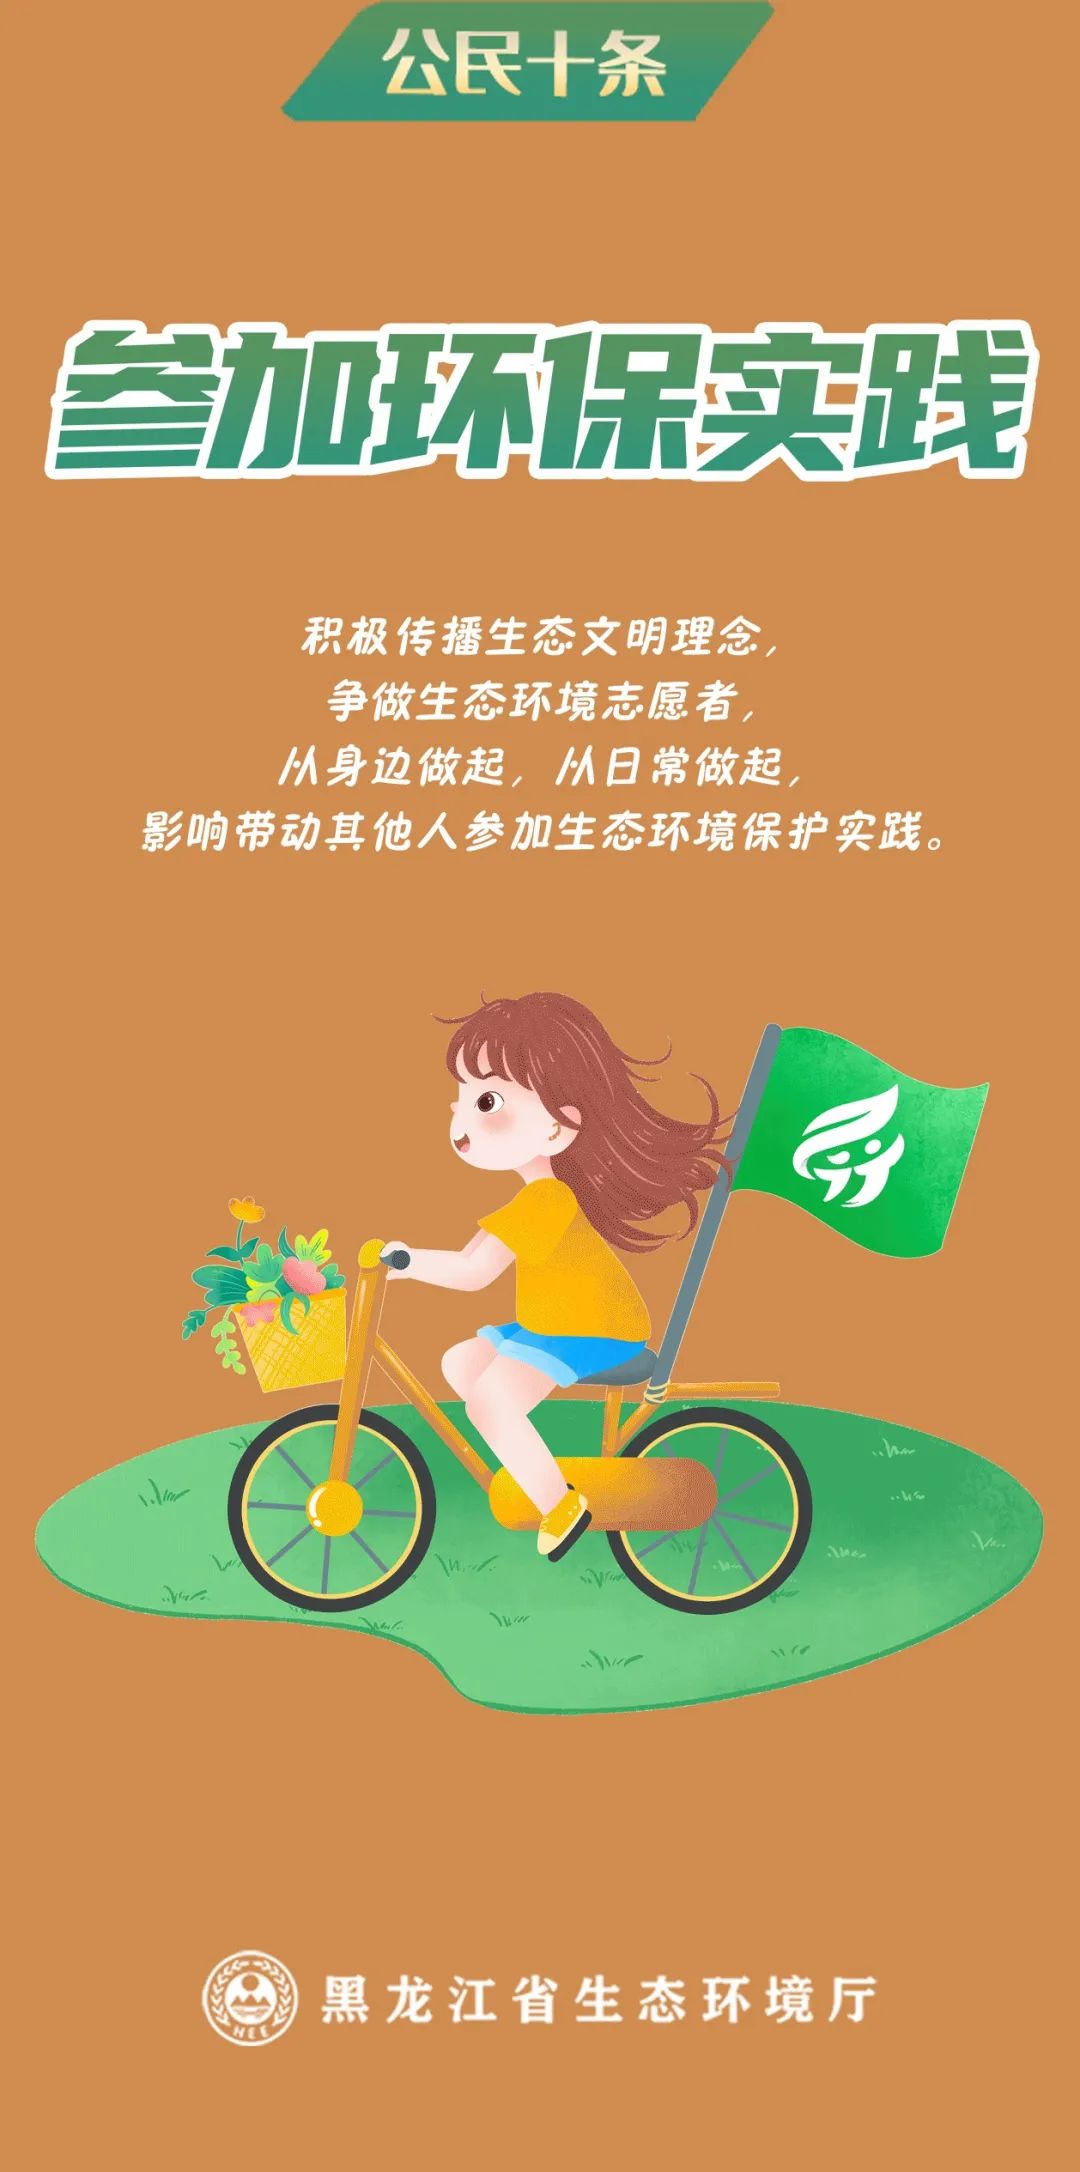 黑龙江省生态环境大使薛微微带你一起了解~公民十条有哪些内容?